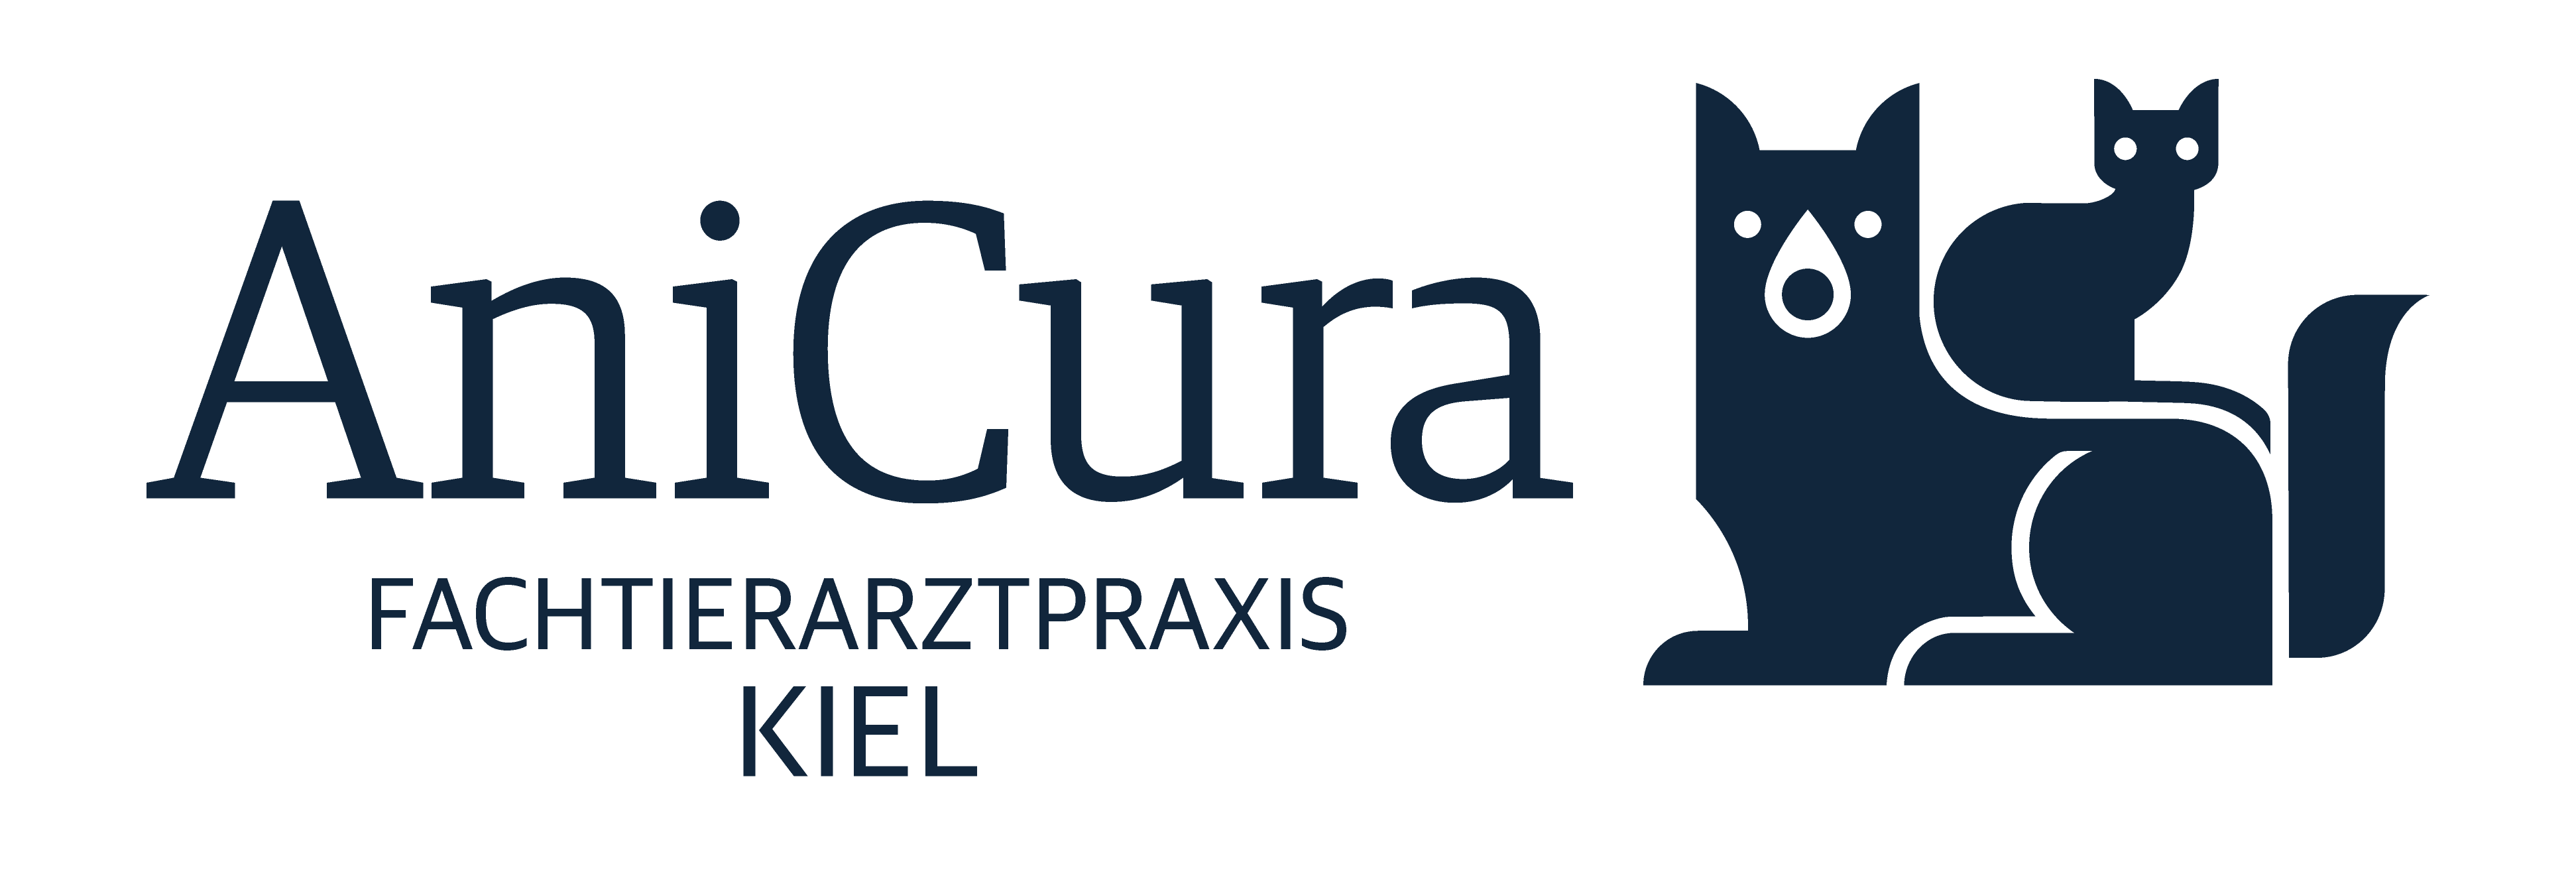 AniCura Kiel logo